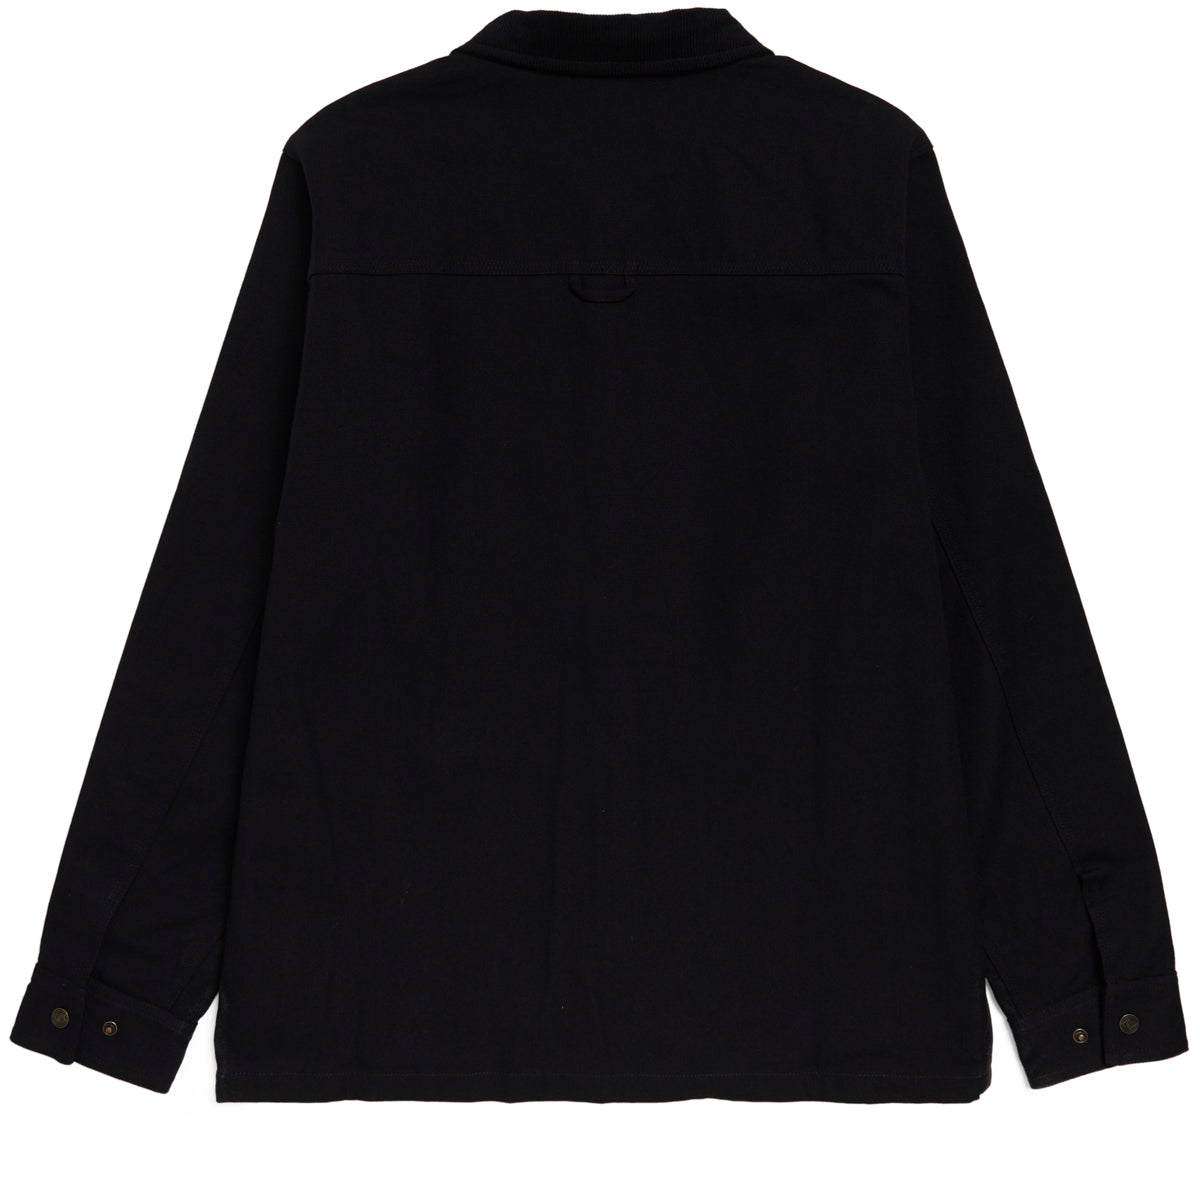 Independent Springer Chore Coat Jacket - Black image 5